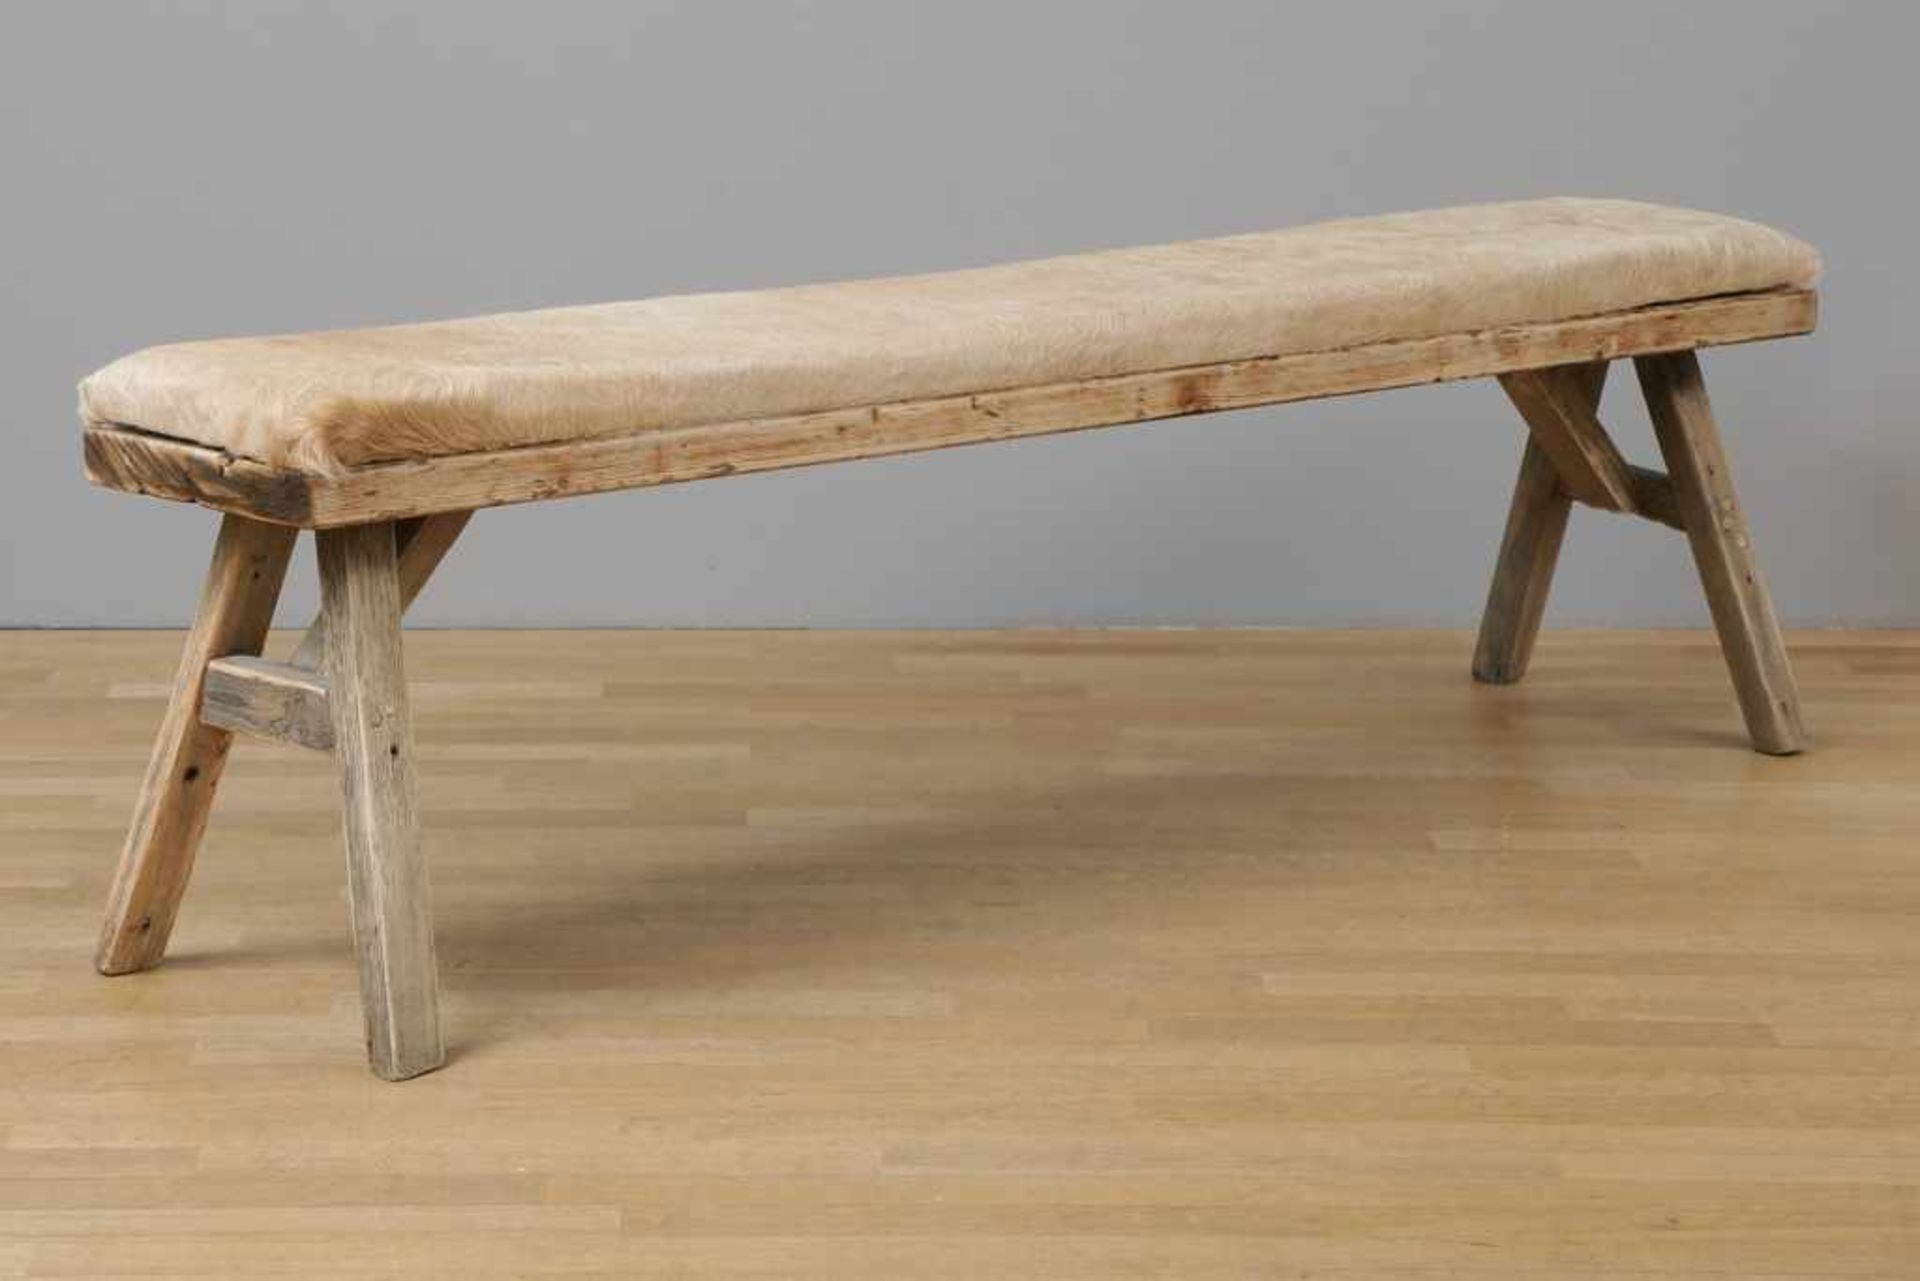 Große Sitzbank Holz und Fell, eckige, lange Sitzfläche mit hellem (Kuh?)-Fell-Bezug auf 4-beinigem